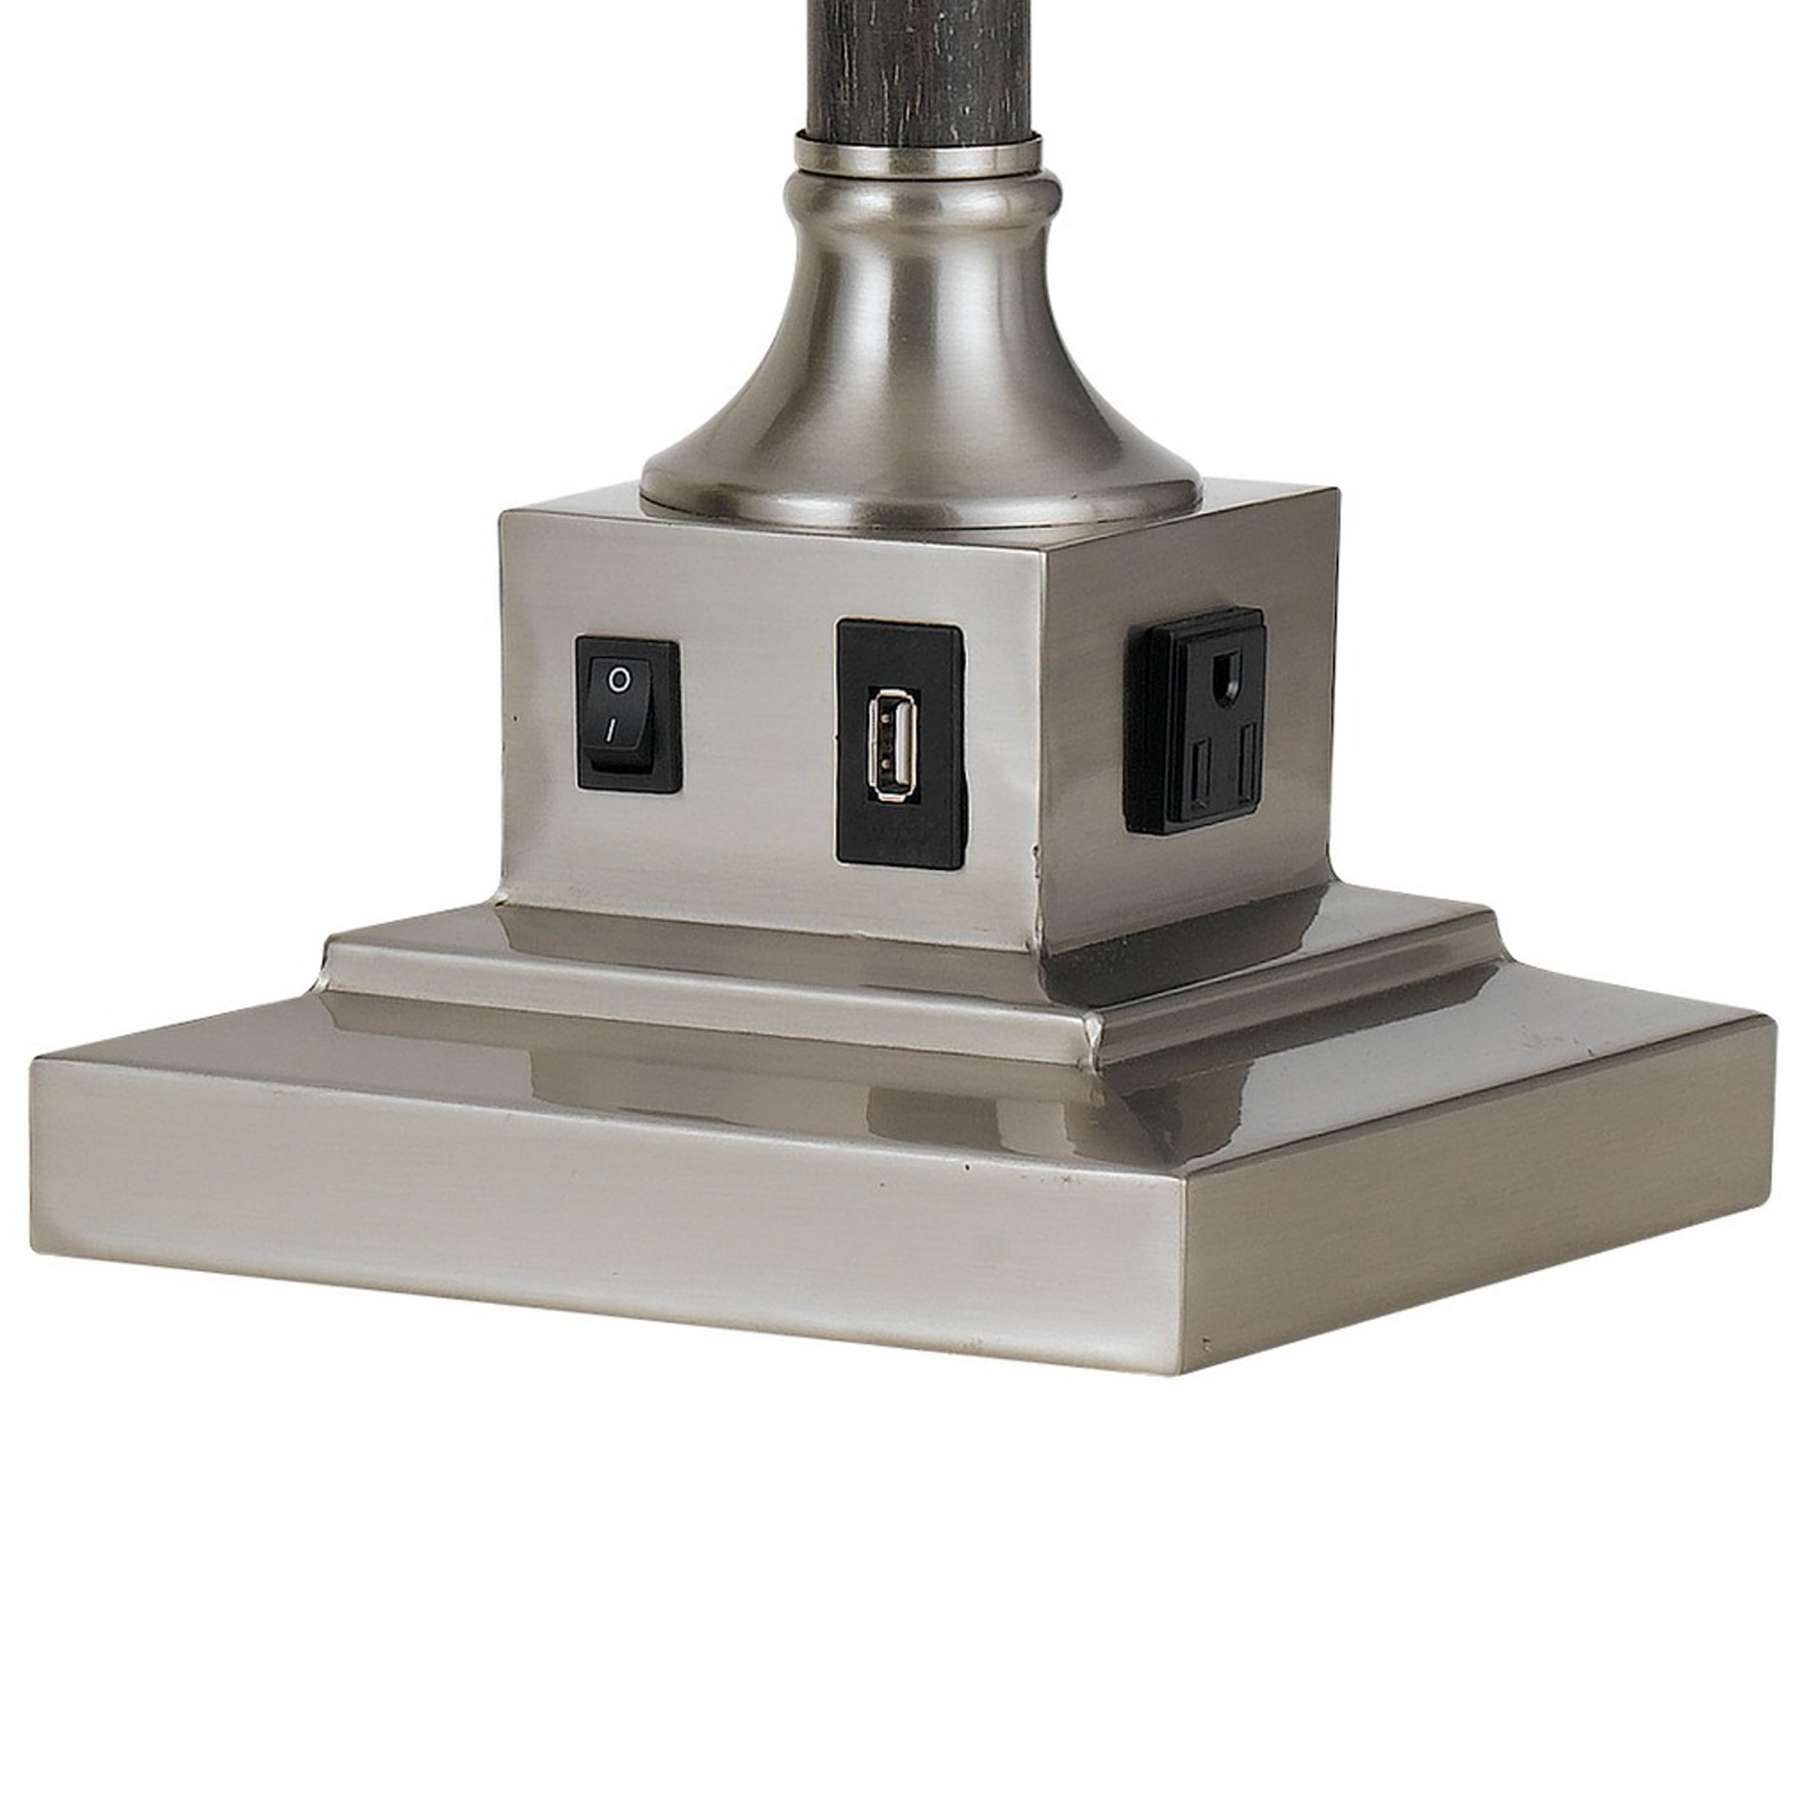 60 Watt Metal Desk Lamp With Adjustable Arm And Head, Silver By Benzara